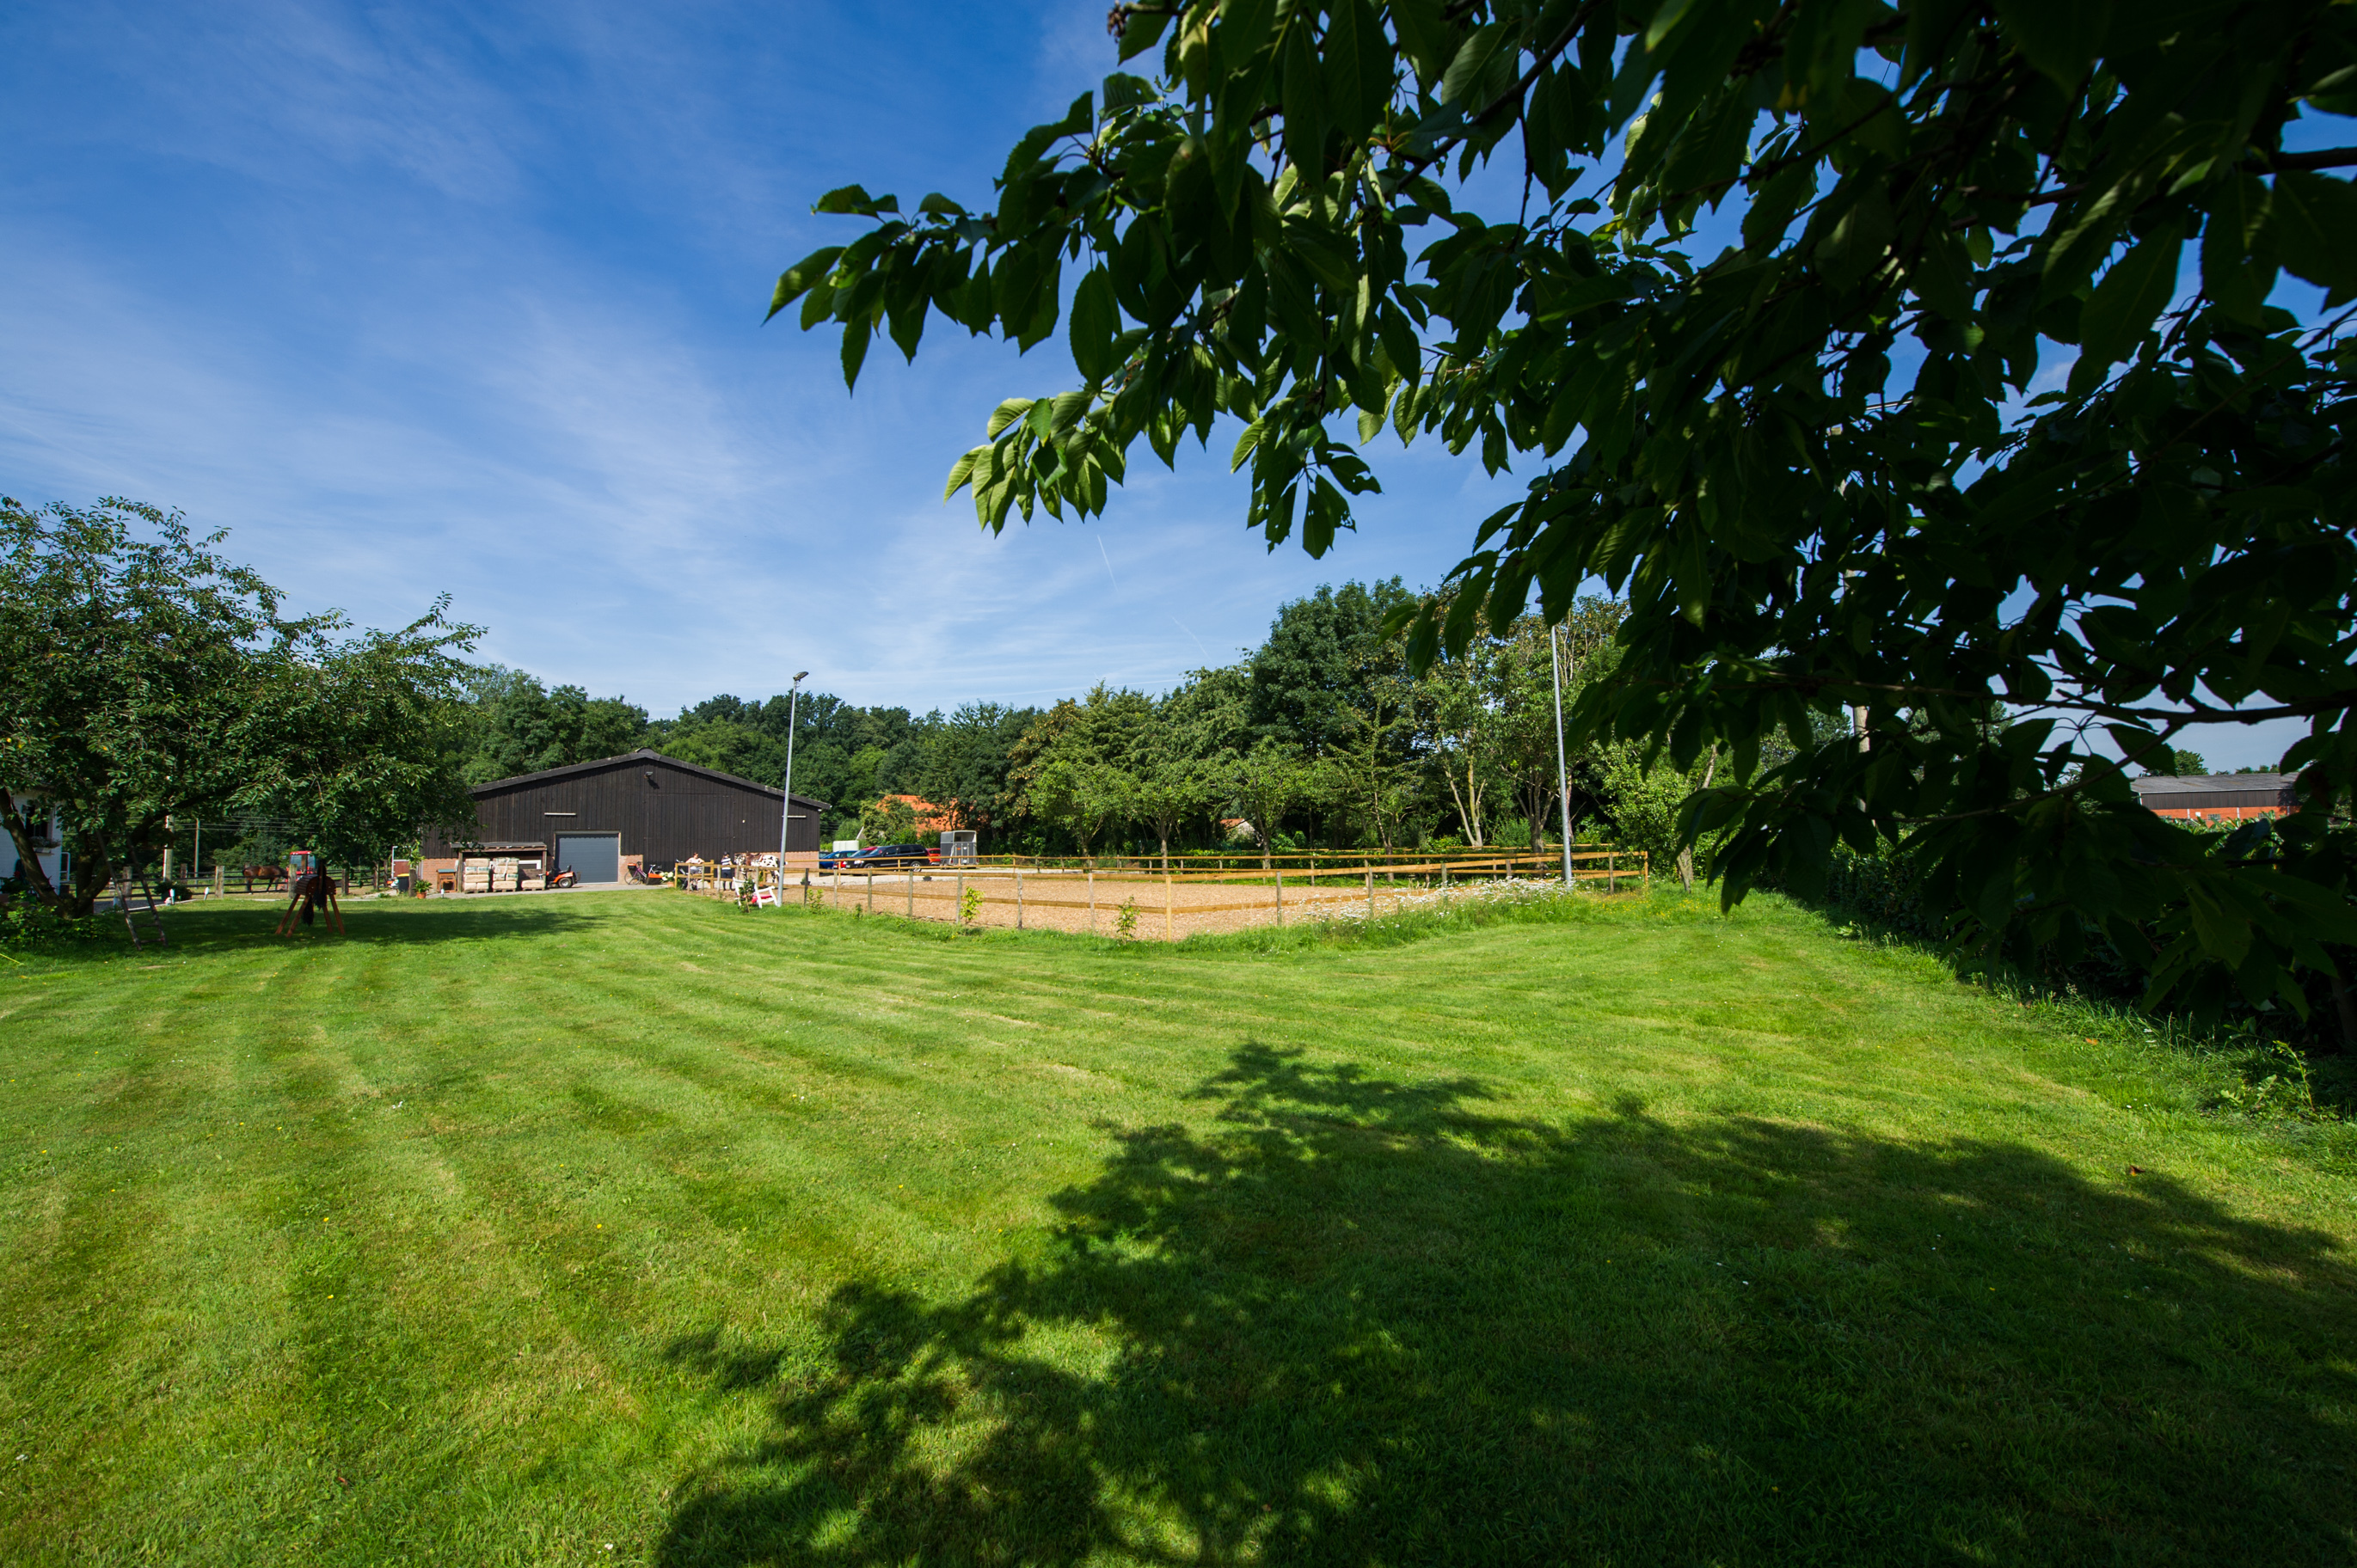 Blick auf das Zentrum für ARR: ein kleiner Reiterhof mit einem Reitplatz umgeben von saftig grünen Weiden und Baumbestand.